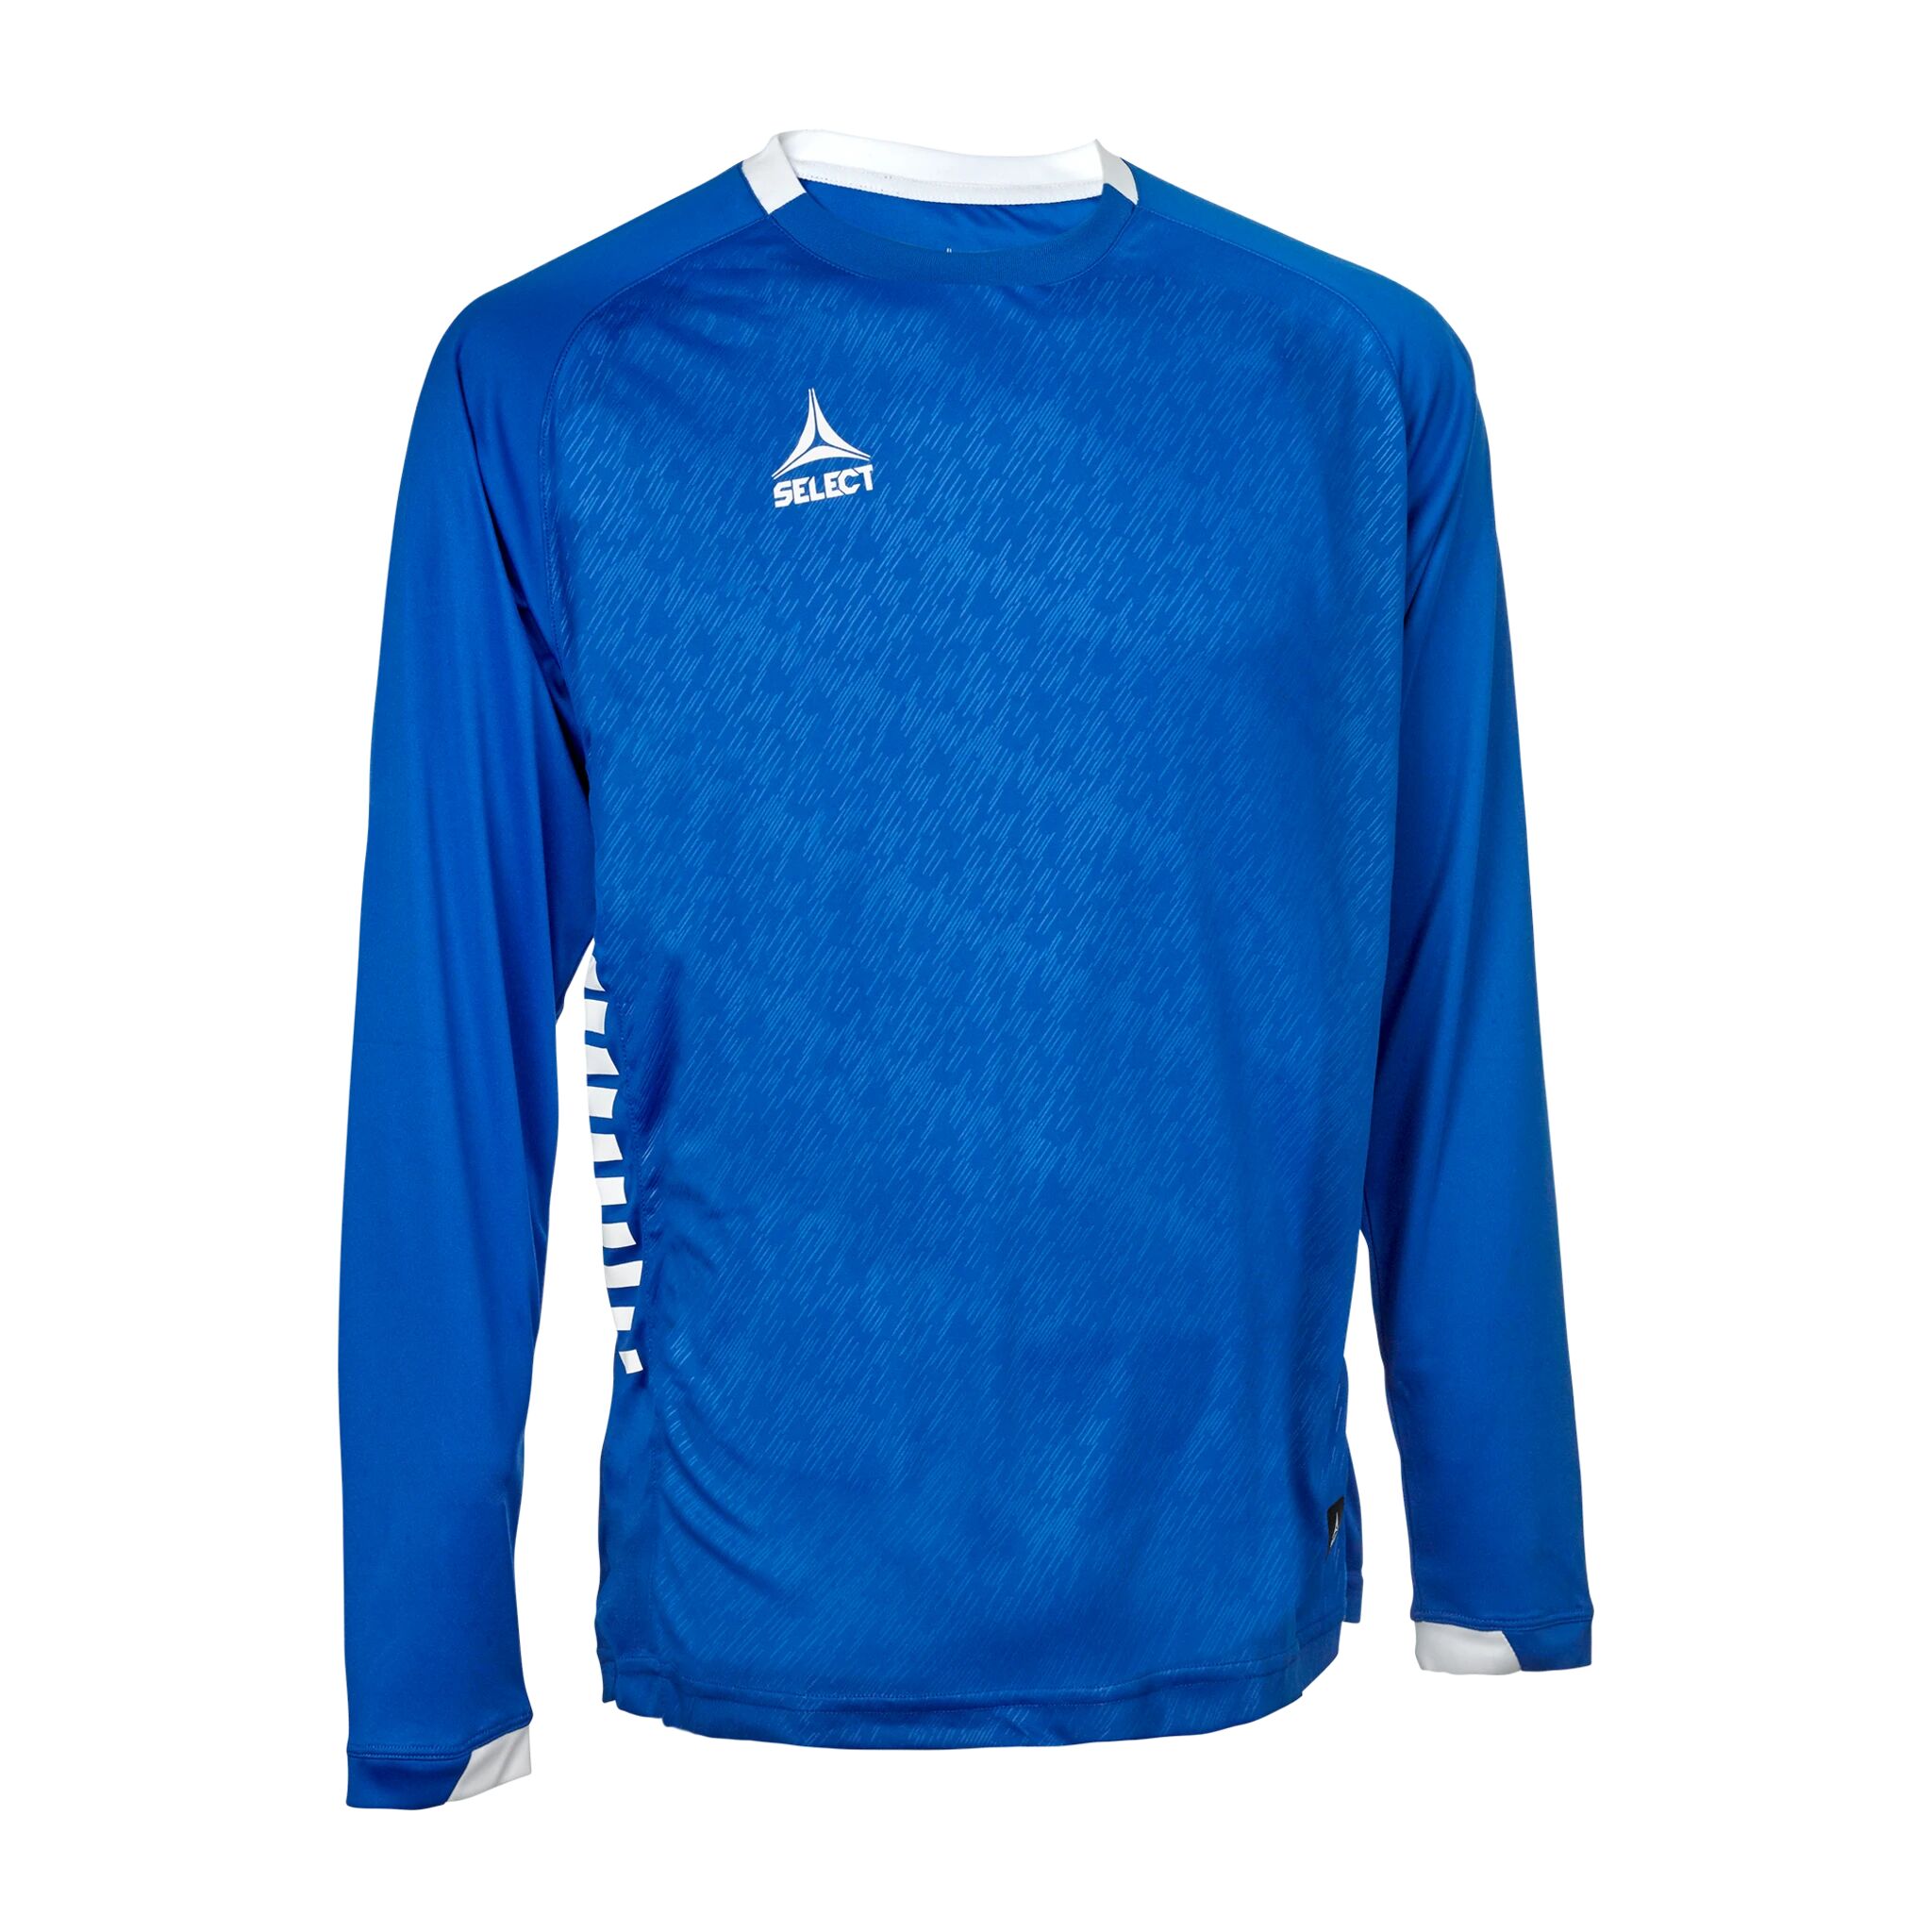 Select Player shirt L/S Spain, treningstrøye unisex M blue